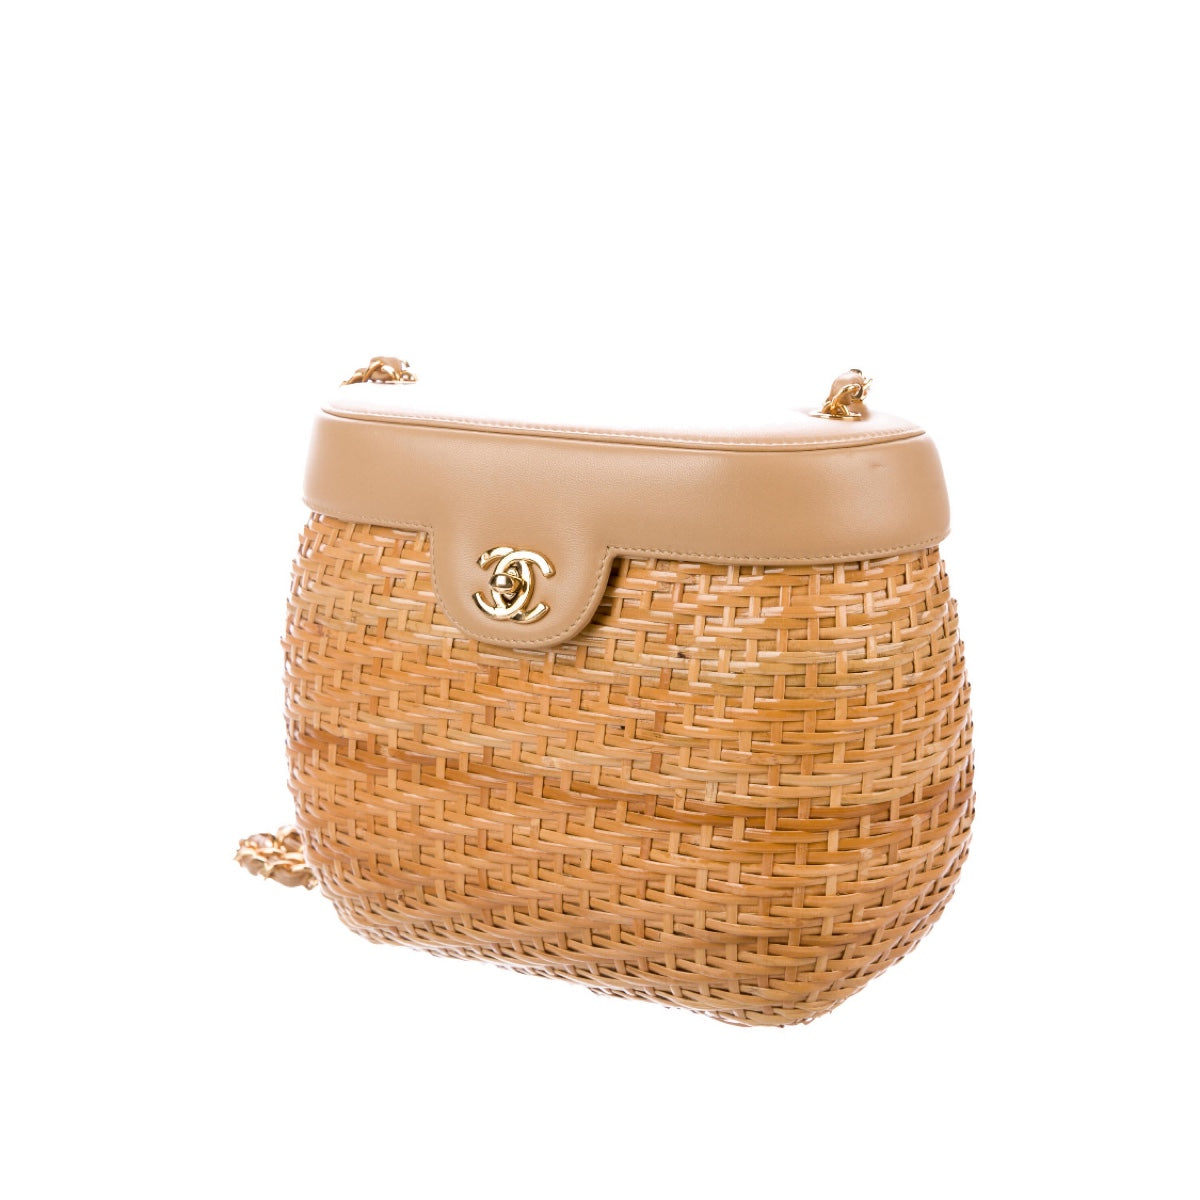 Vintage Chanel Wicker Picnic Basket Bag Black Gold Hardware